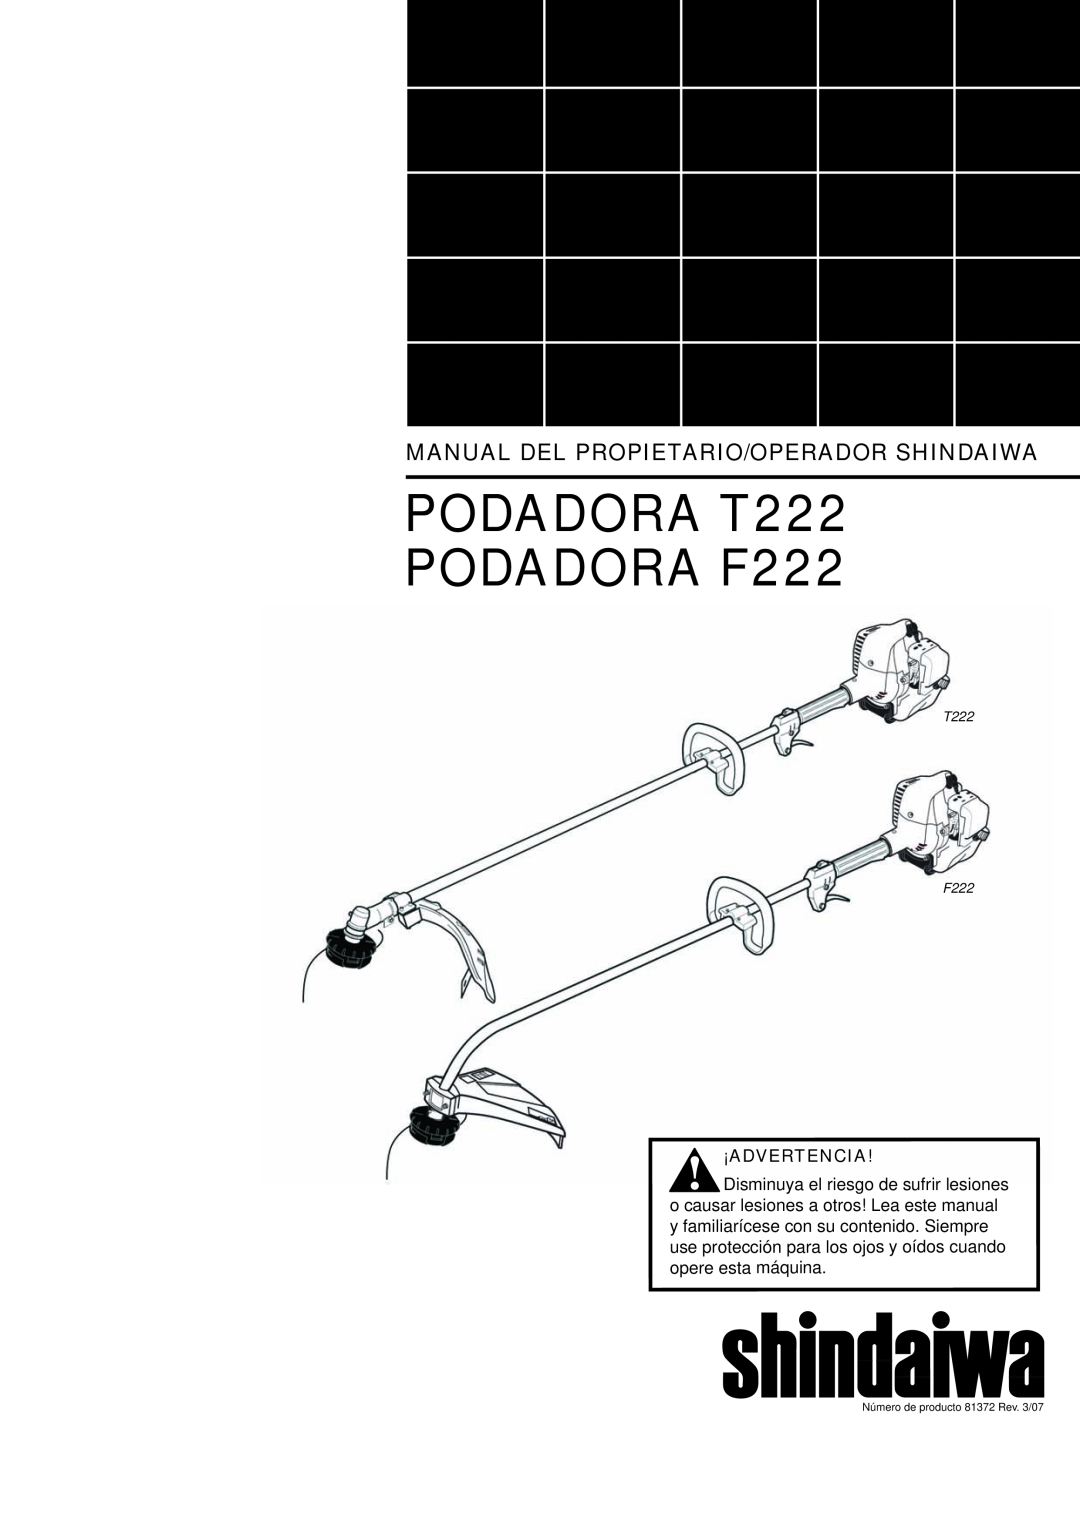 Shindaiwa 81372 manual Podadora T222 Podadora F222, Manual Del Propietario/Operador Shindaiwa, ¡Advertencia 